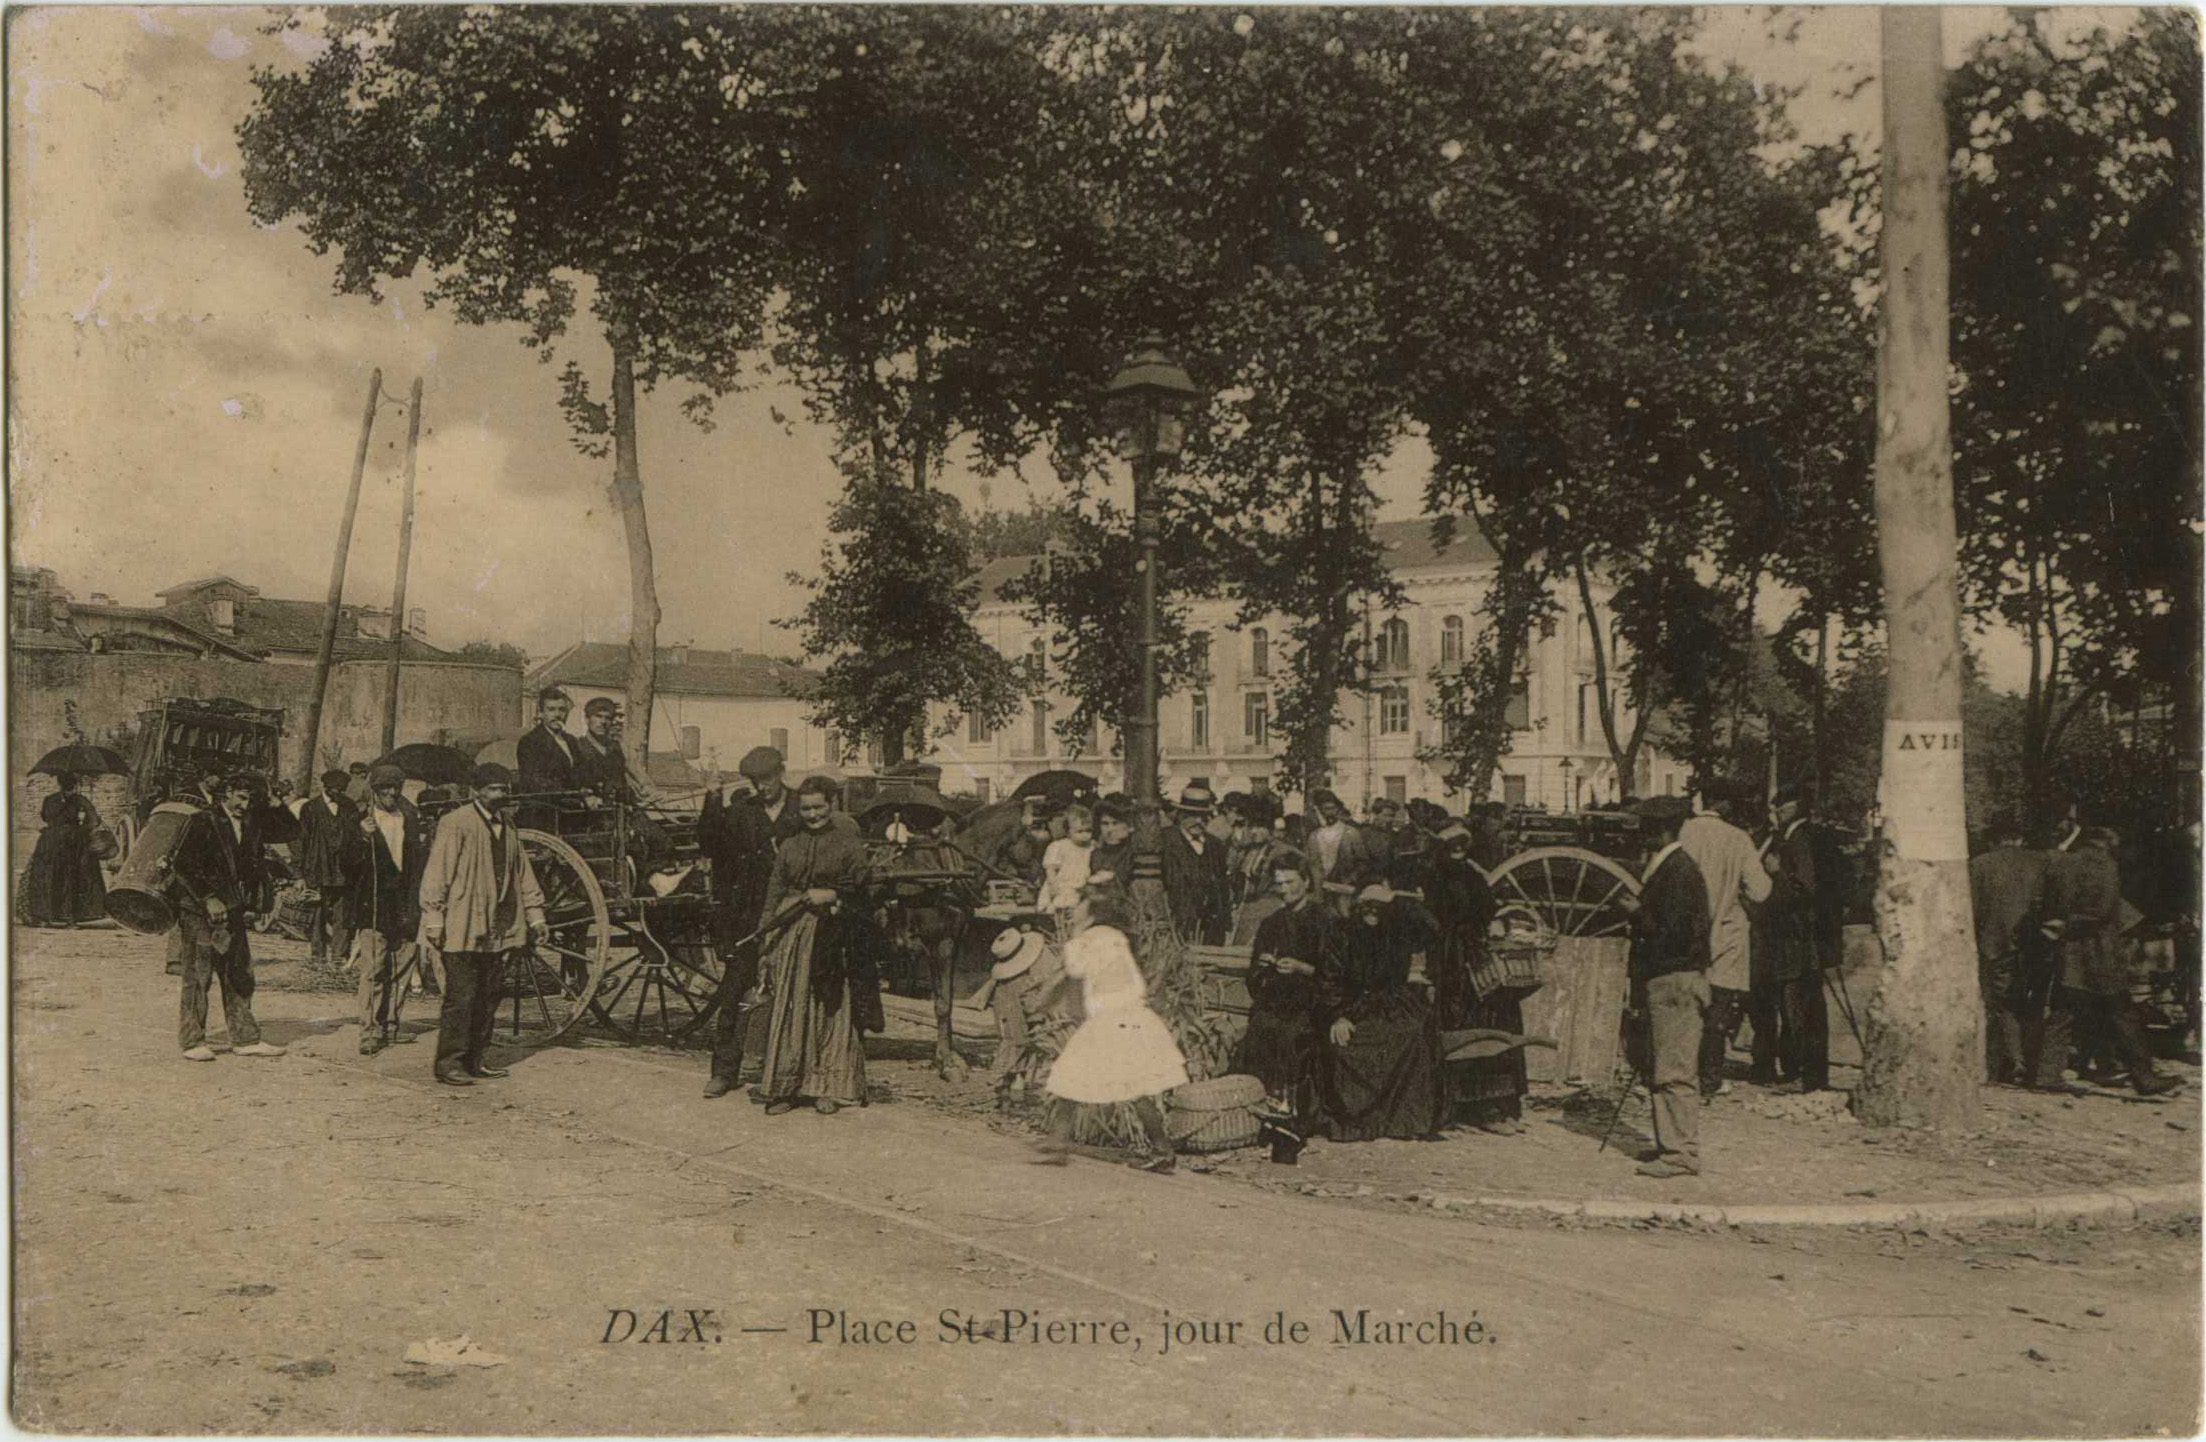 Dax - Place St-Pierre, jour de Marché.